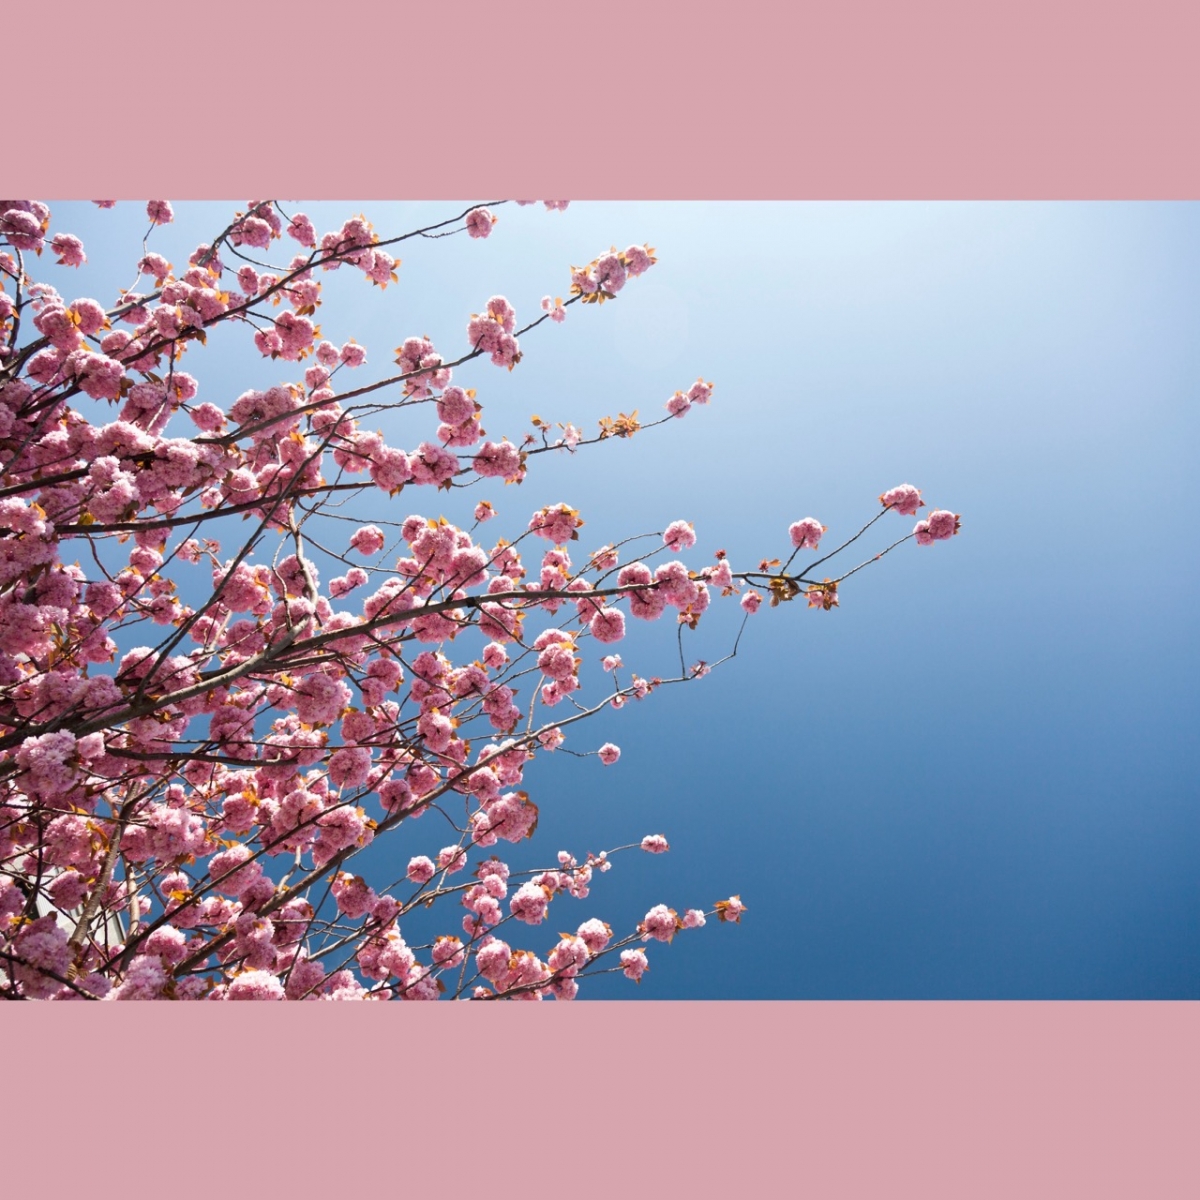 Sakura blossom in Le Havre